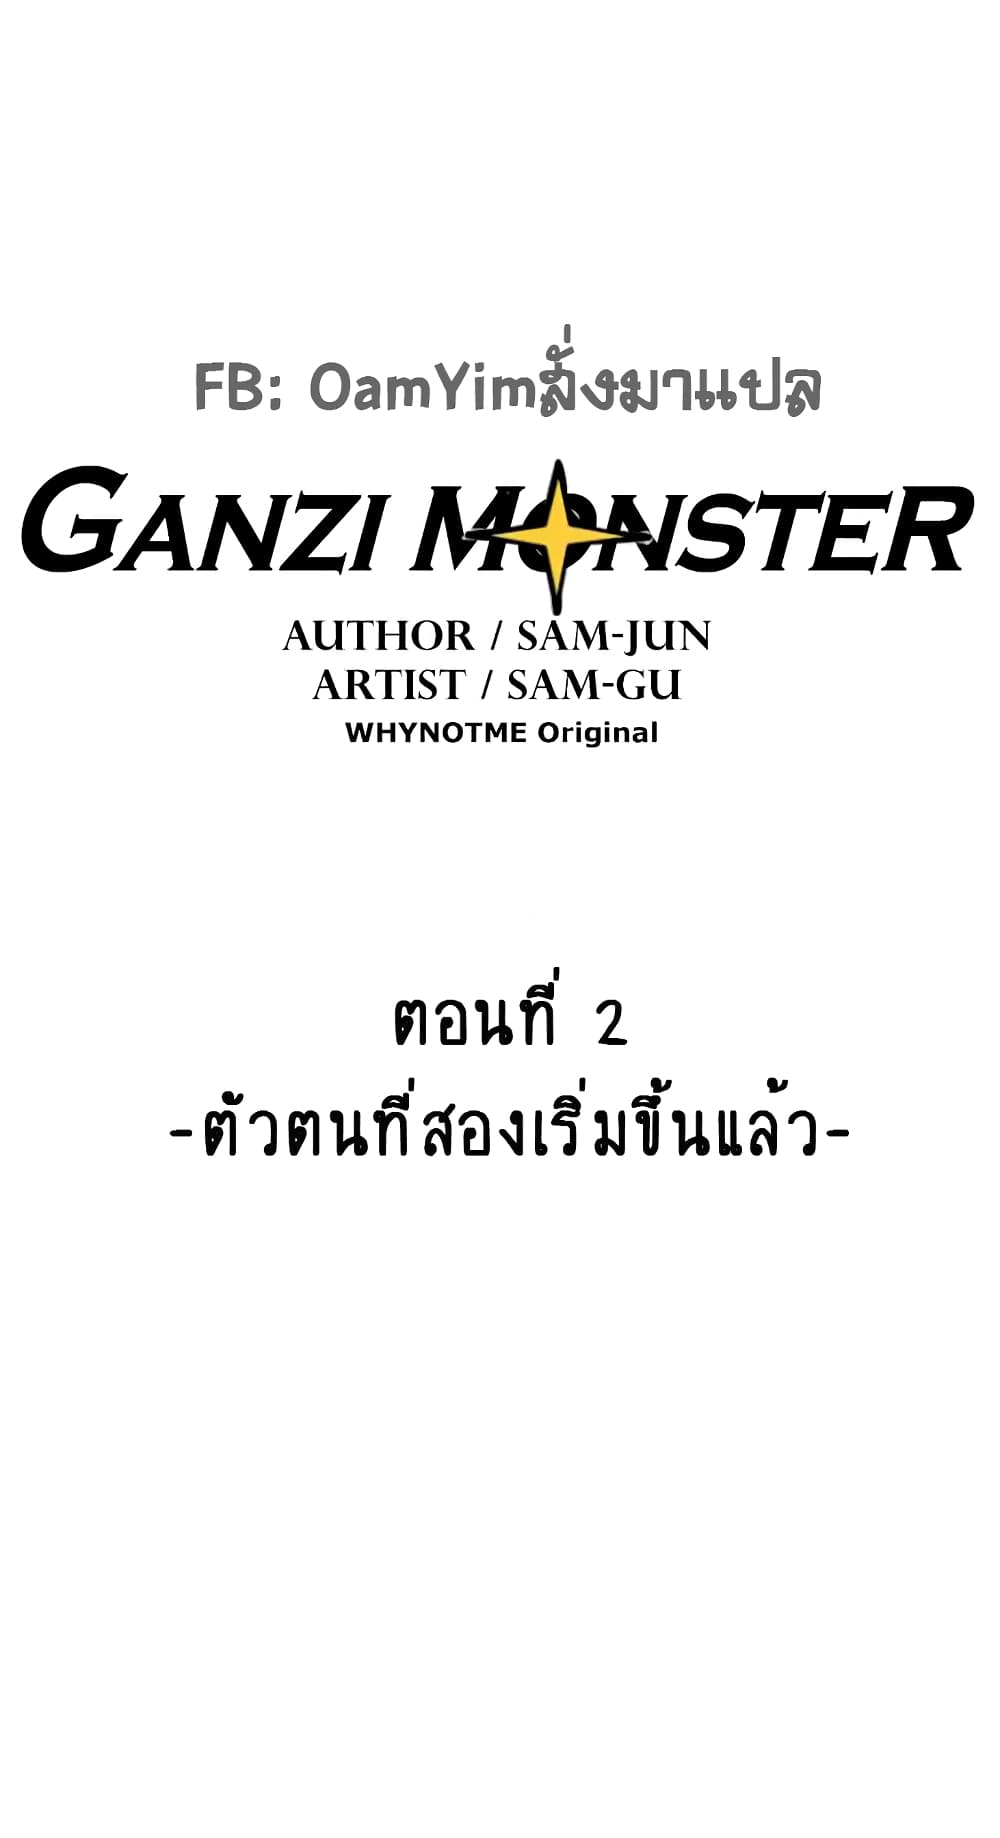 Ganzi Monster 2 (1)